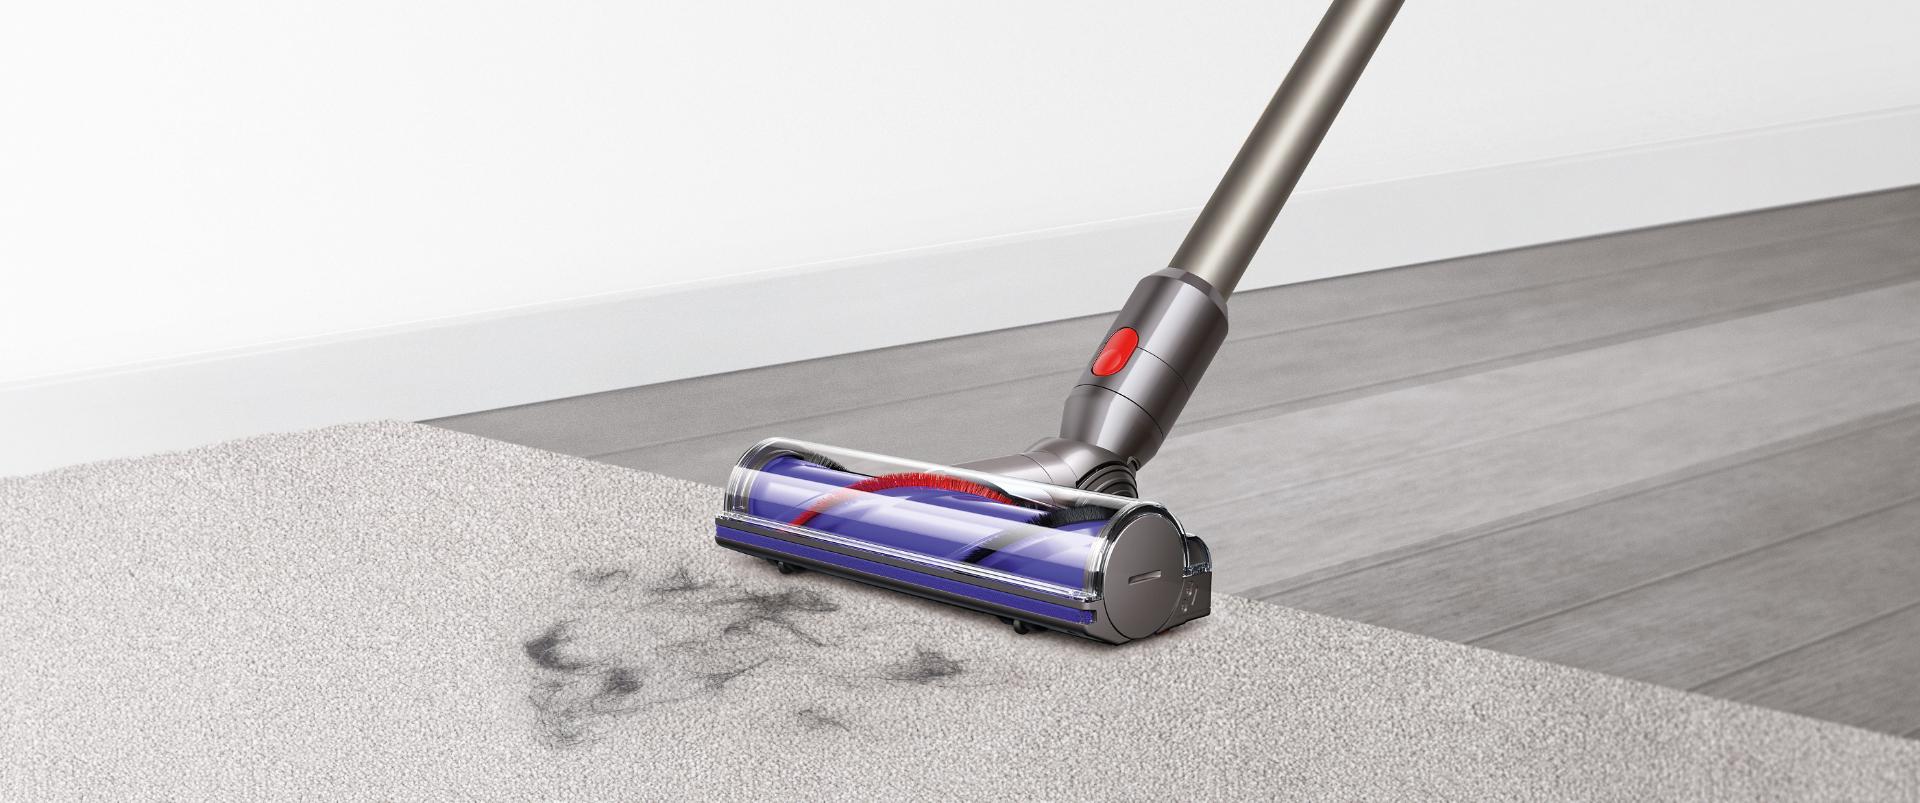  Vacuum head on carpet